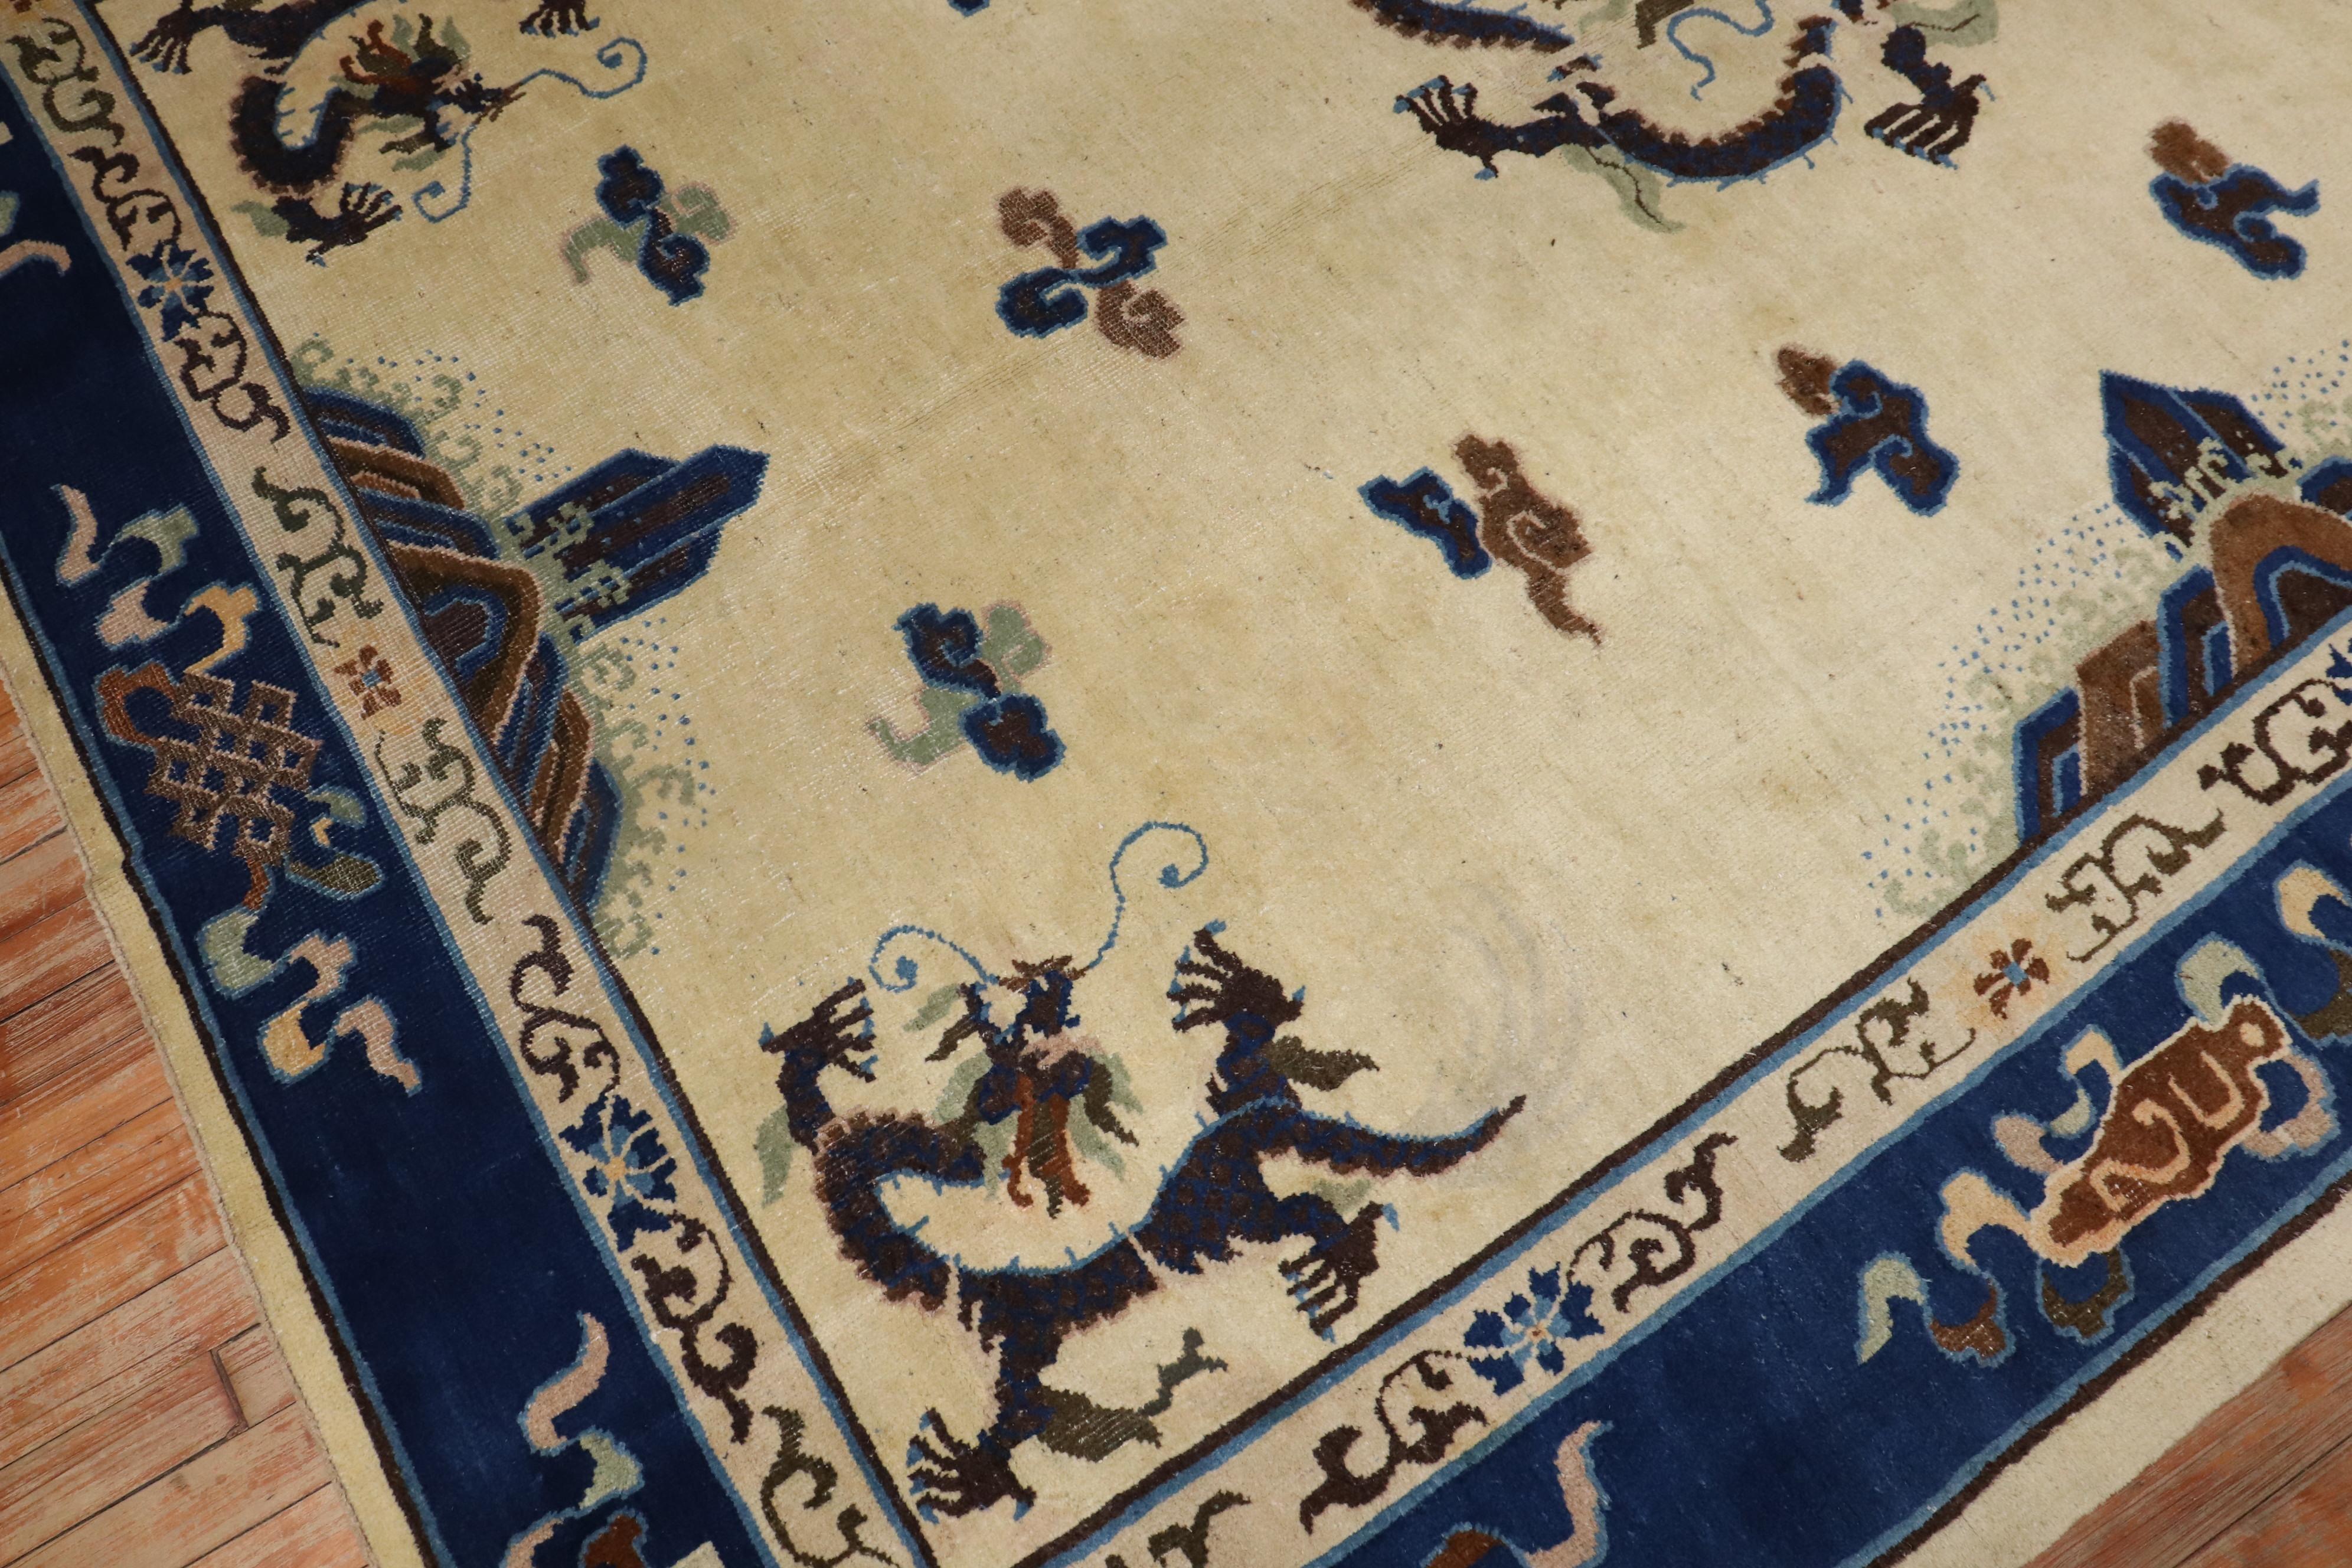 Tapis chinois du début du XXe siècle à motif de dragon de Pékin, avec un vaste champ ouvert sur un fond ivoire

Mesures : 7'3'' x 9'7''

Les dragons chinois sont un symbole important et puissant dans le monde oriental et sont parfois présents sur